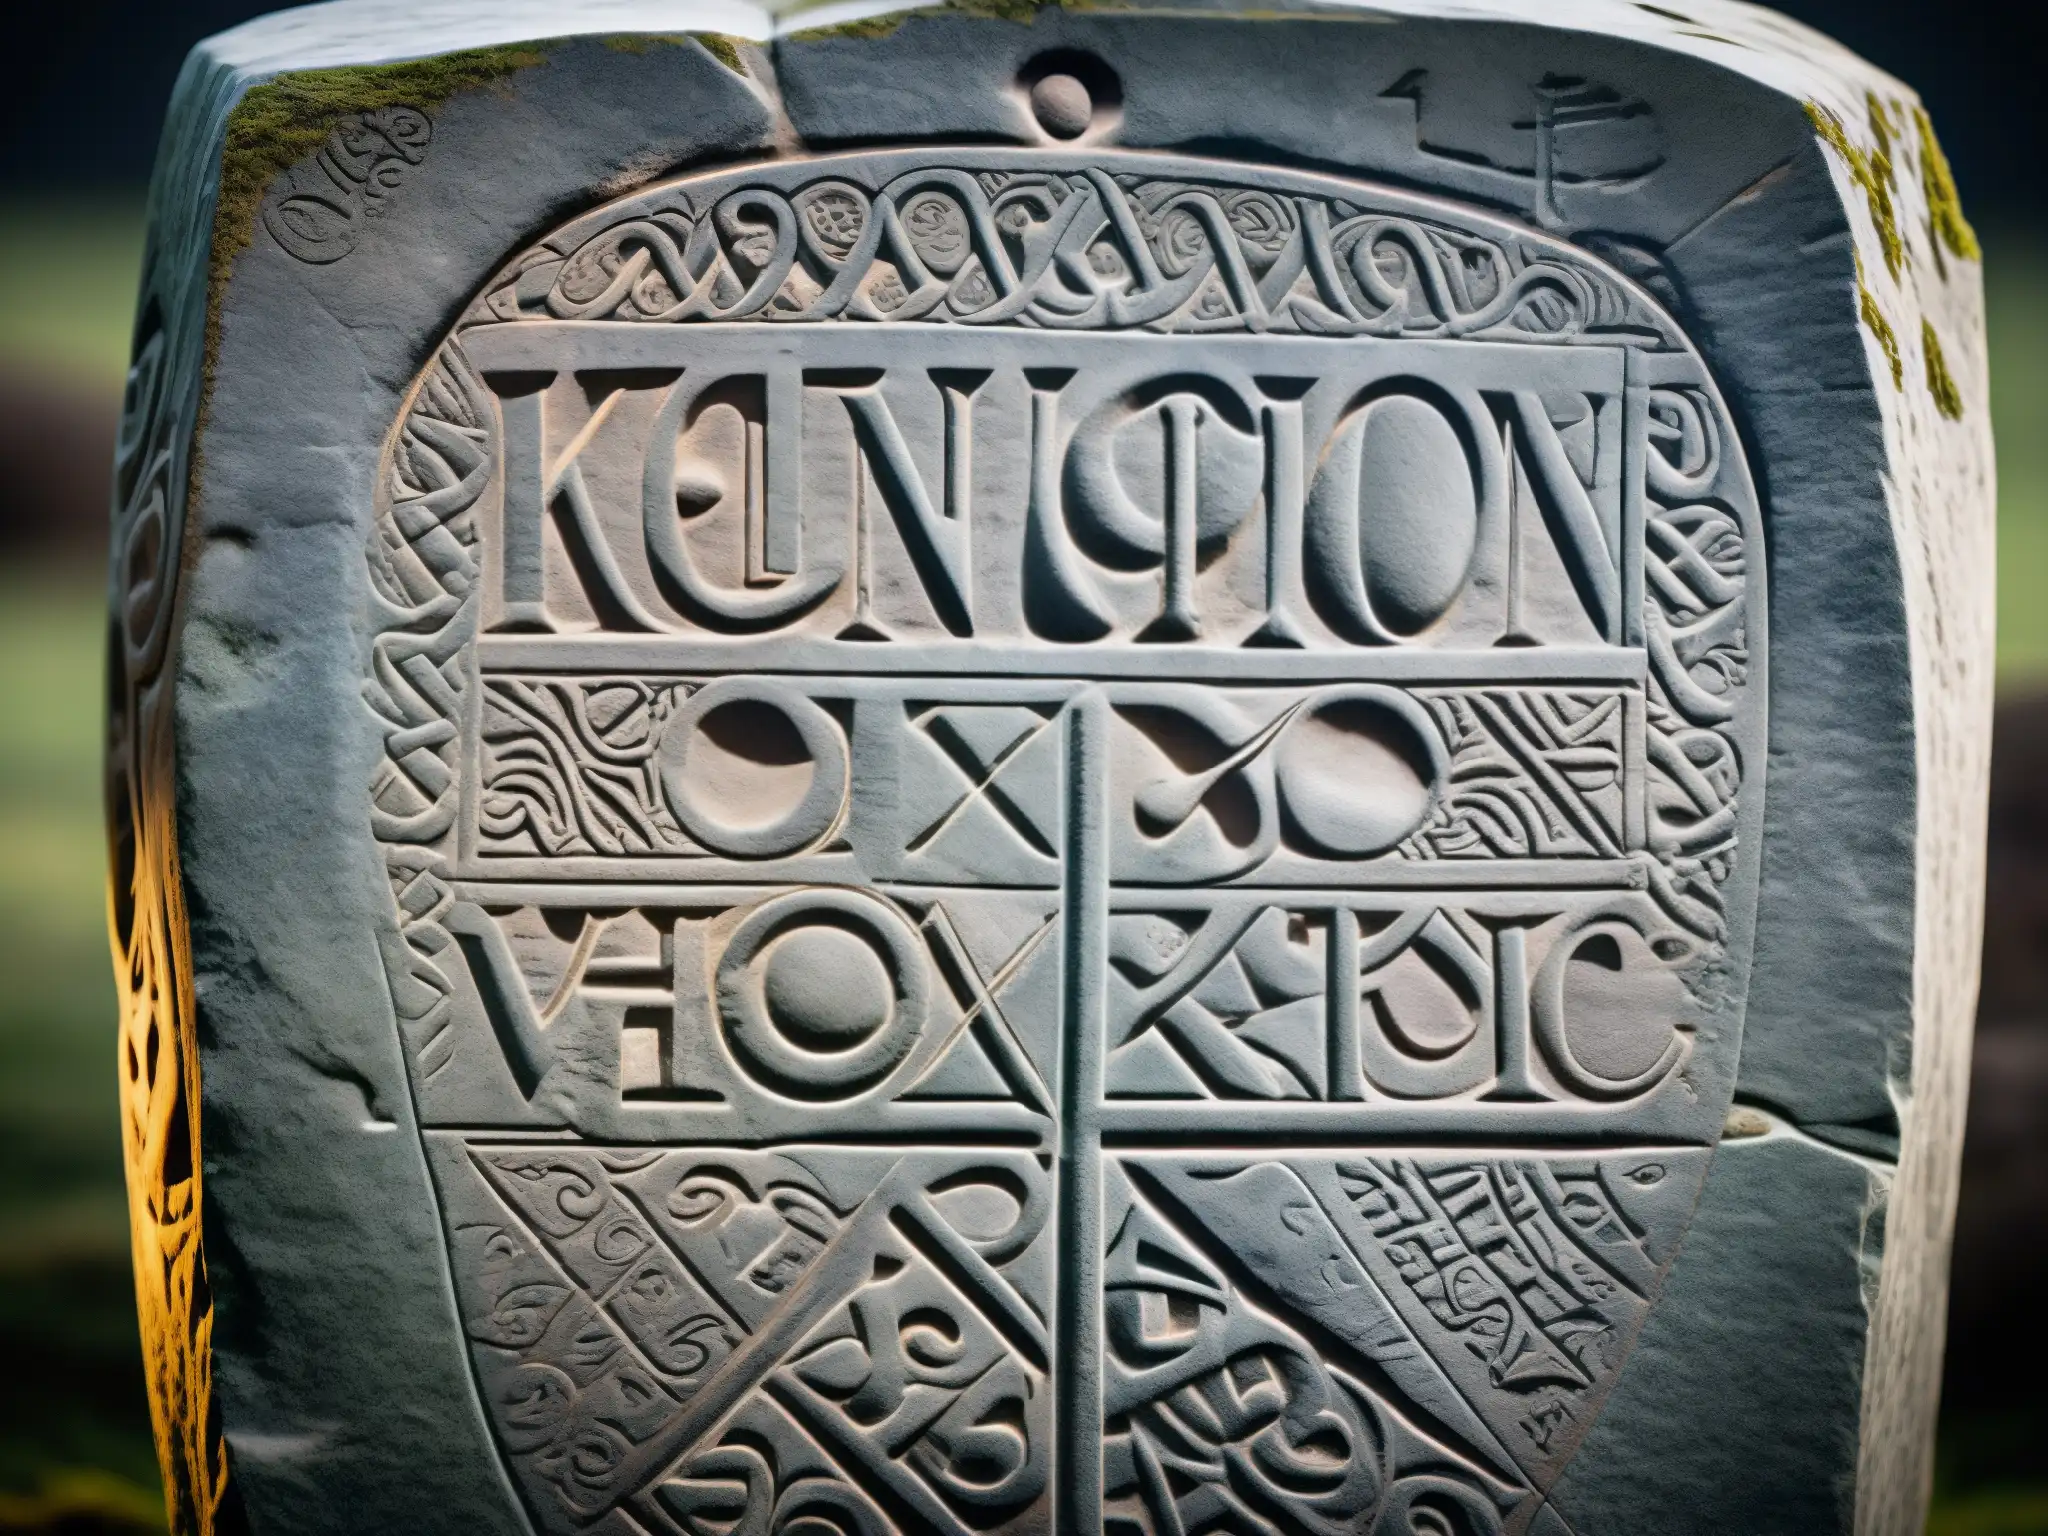 Una imagen detallada y en alta resolución del Runestone de Kensington, mostrando sus intrincados grabados y textura desgastada